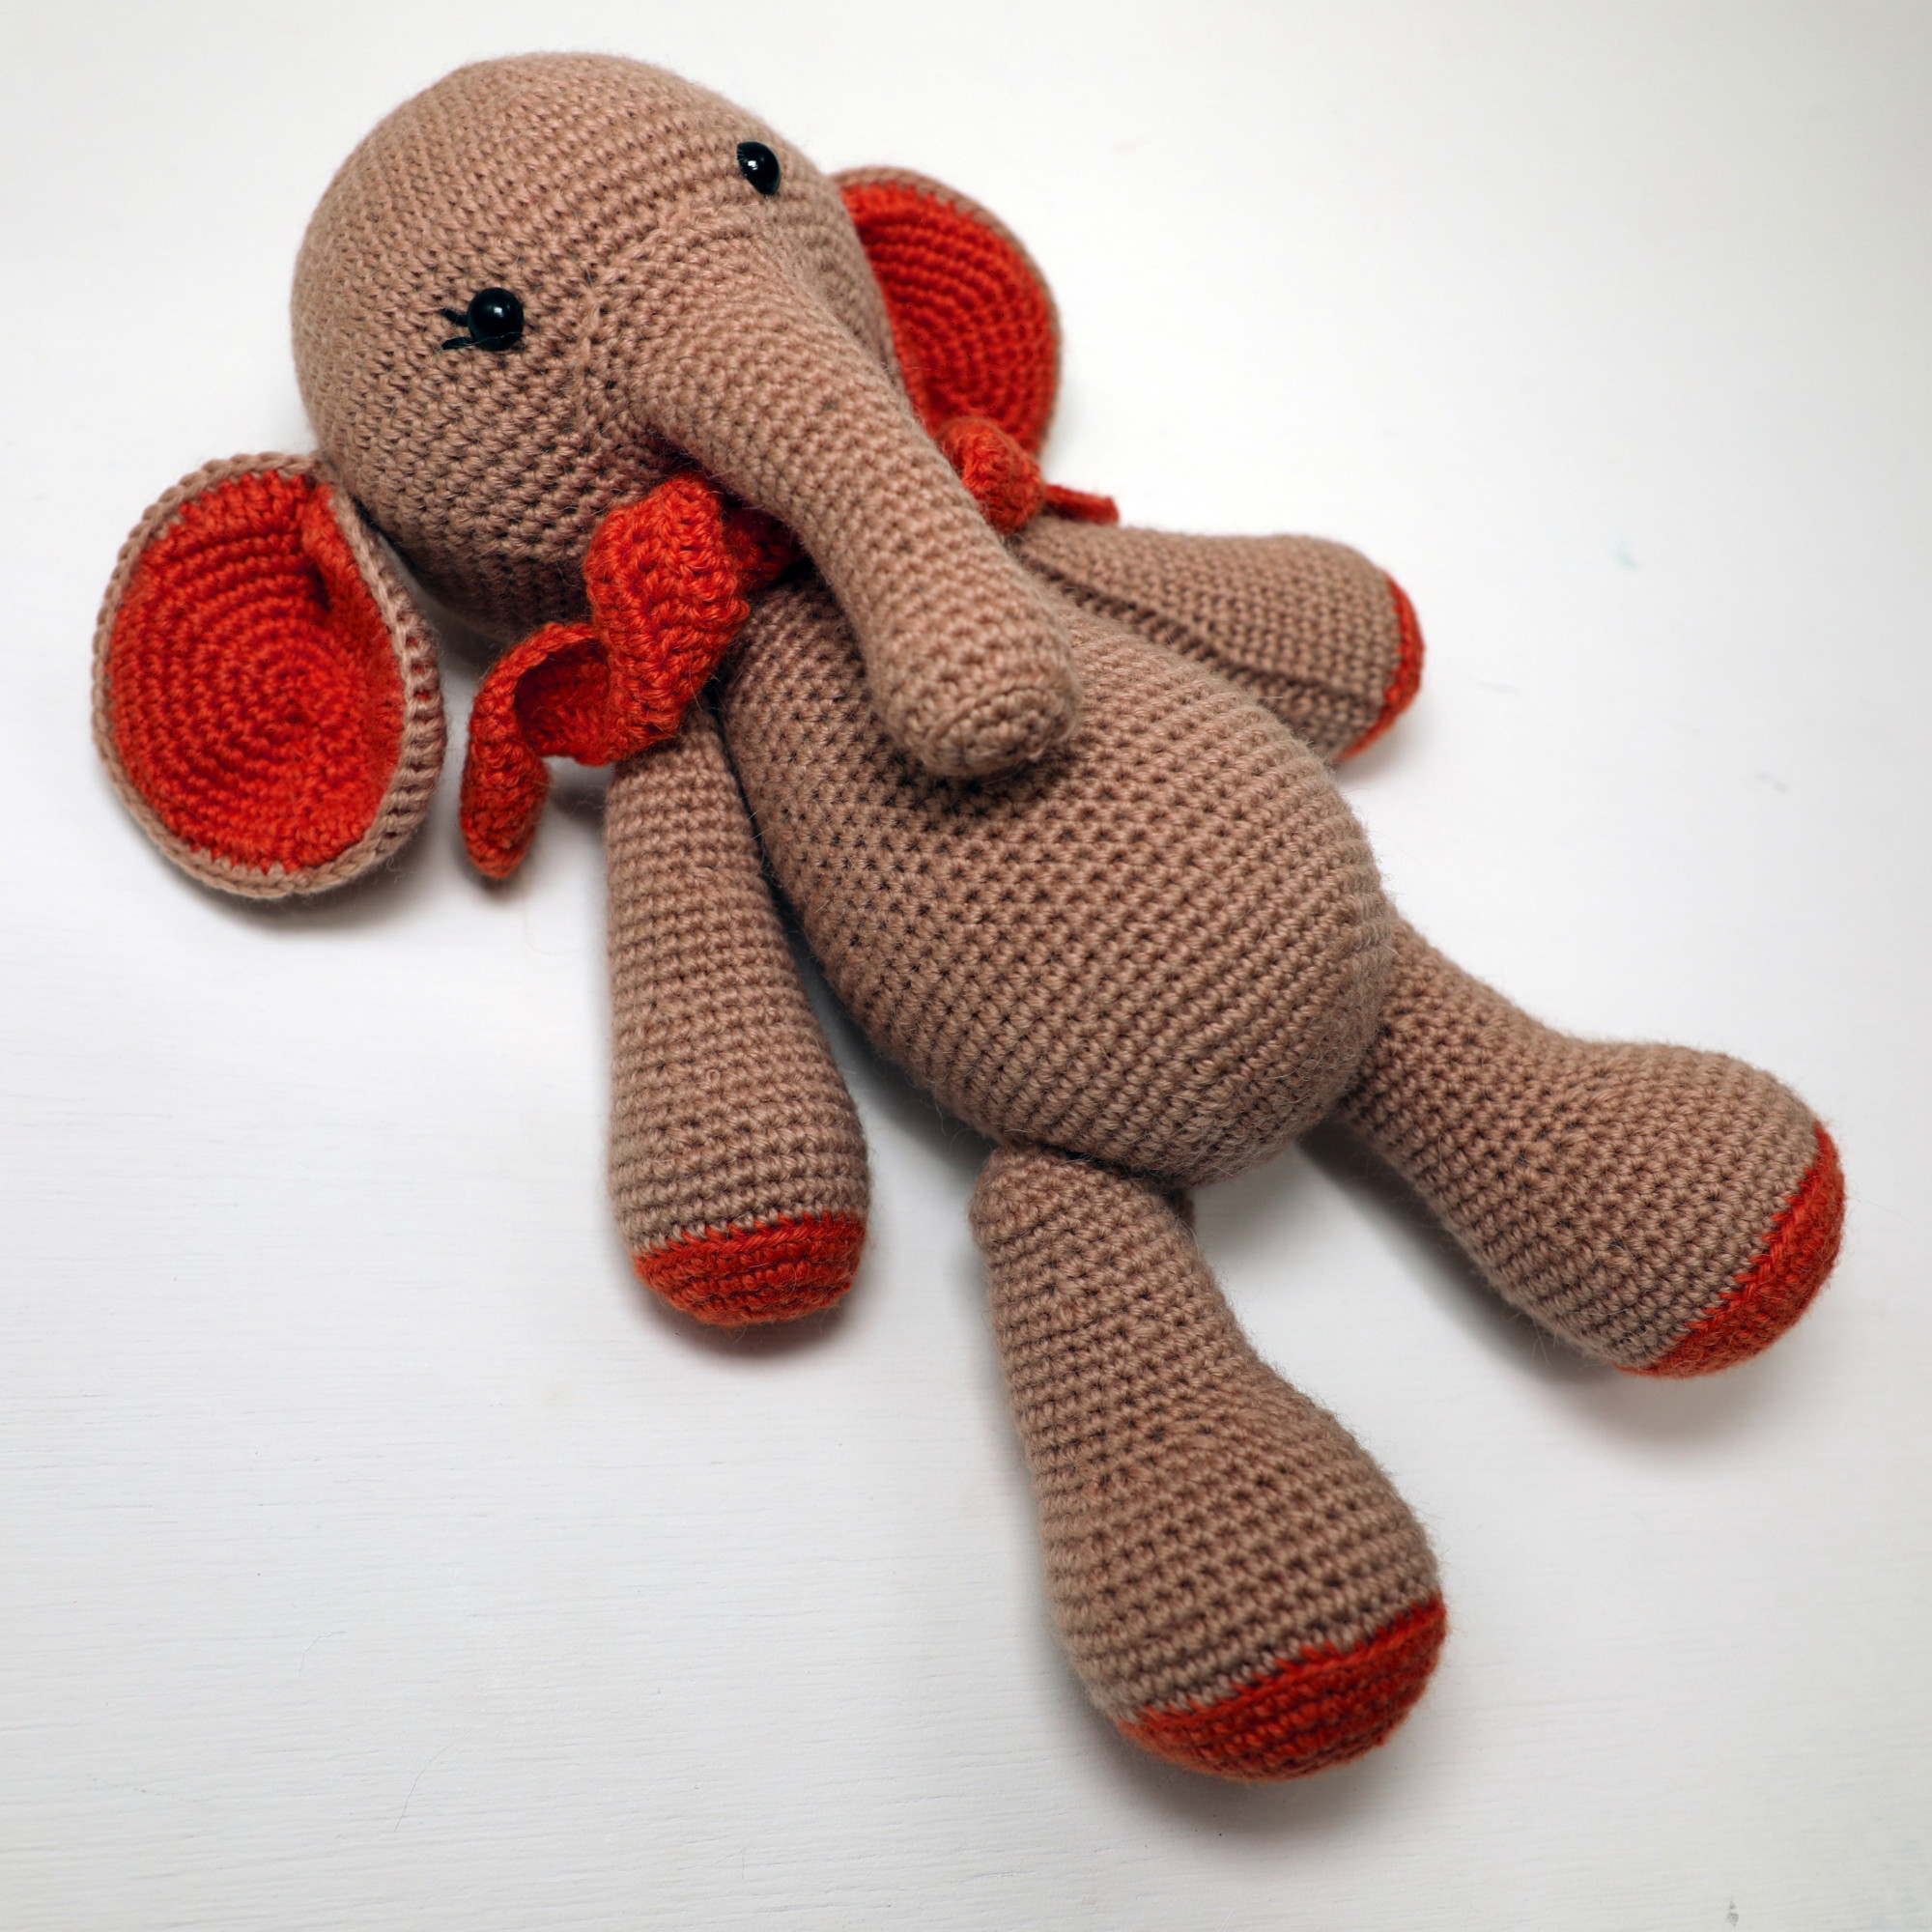 Elephant Crocheted Stuffed Zoo Animals